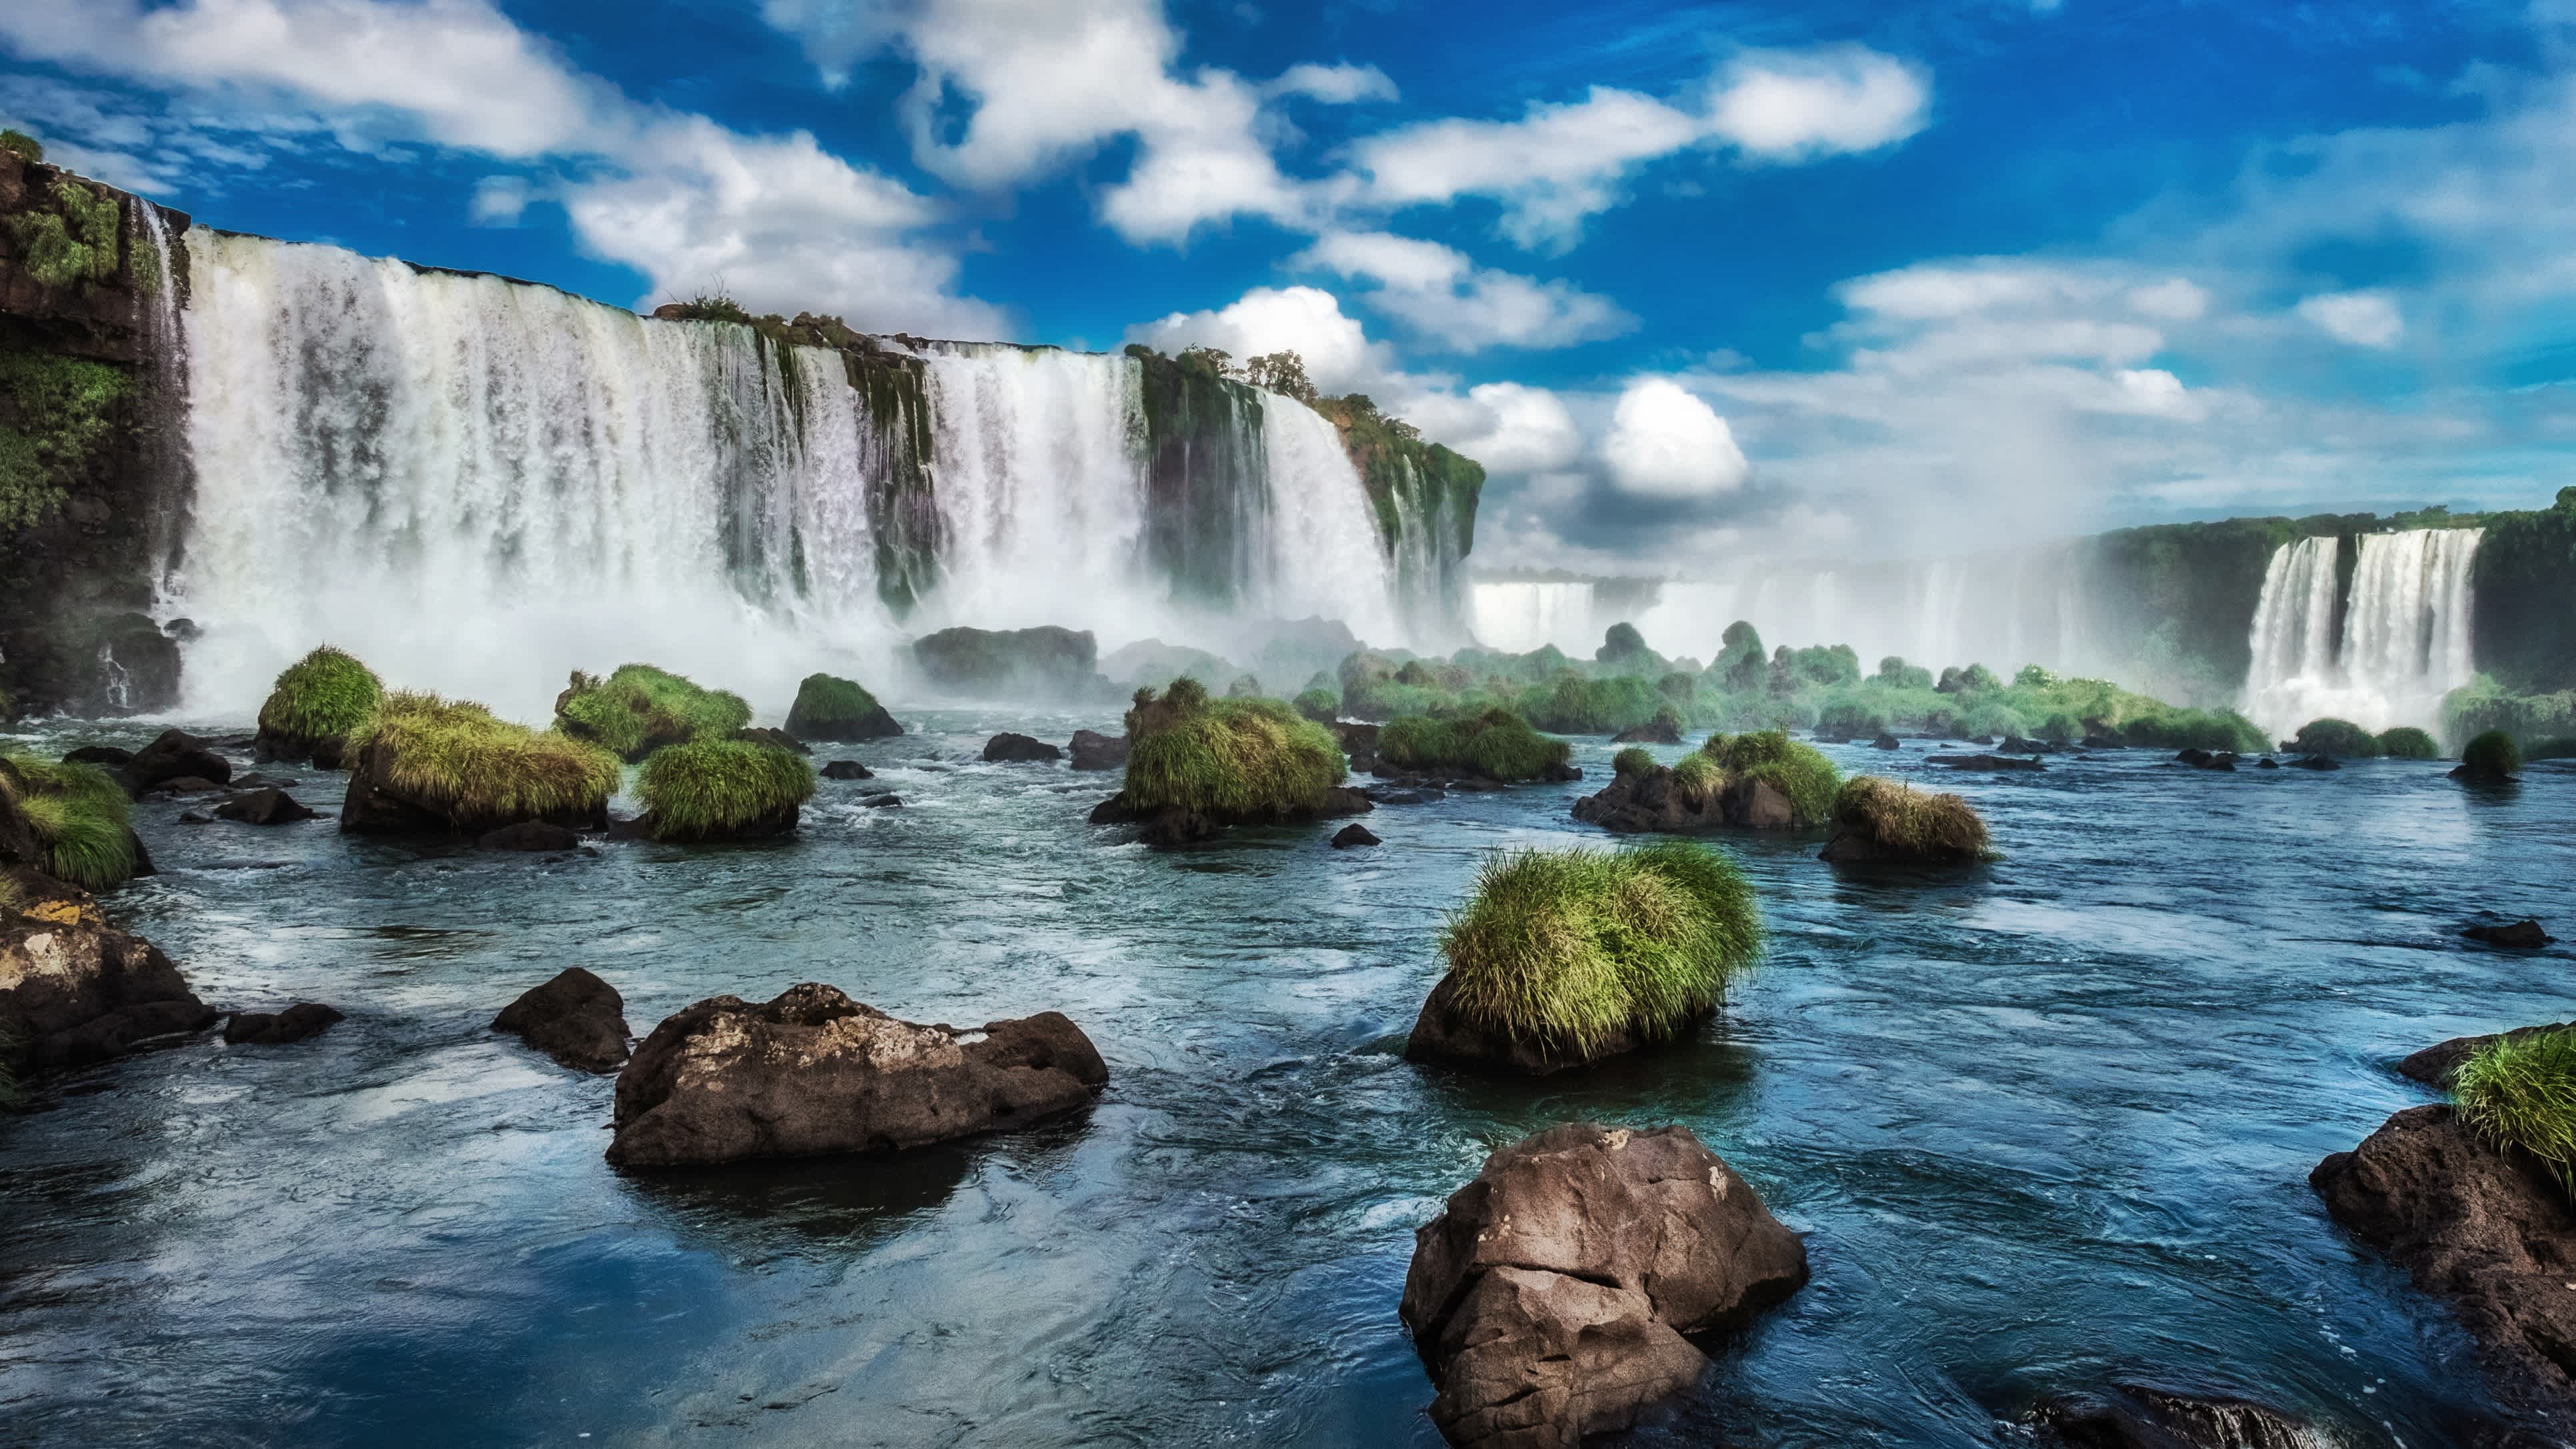 Découvrez les impressionnantes chutes d'Iguaçu en Argentine lors de votre séjour, Argentine